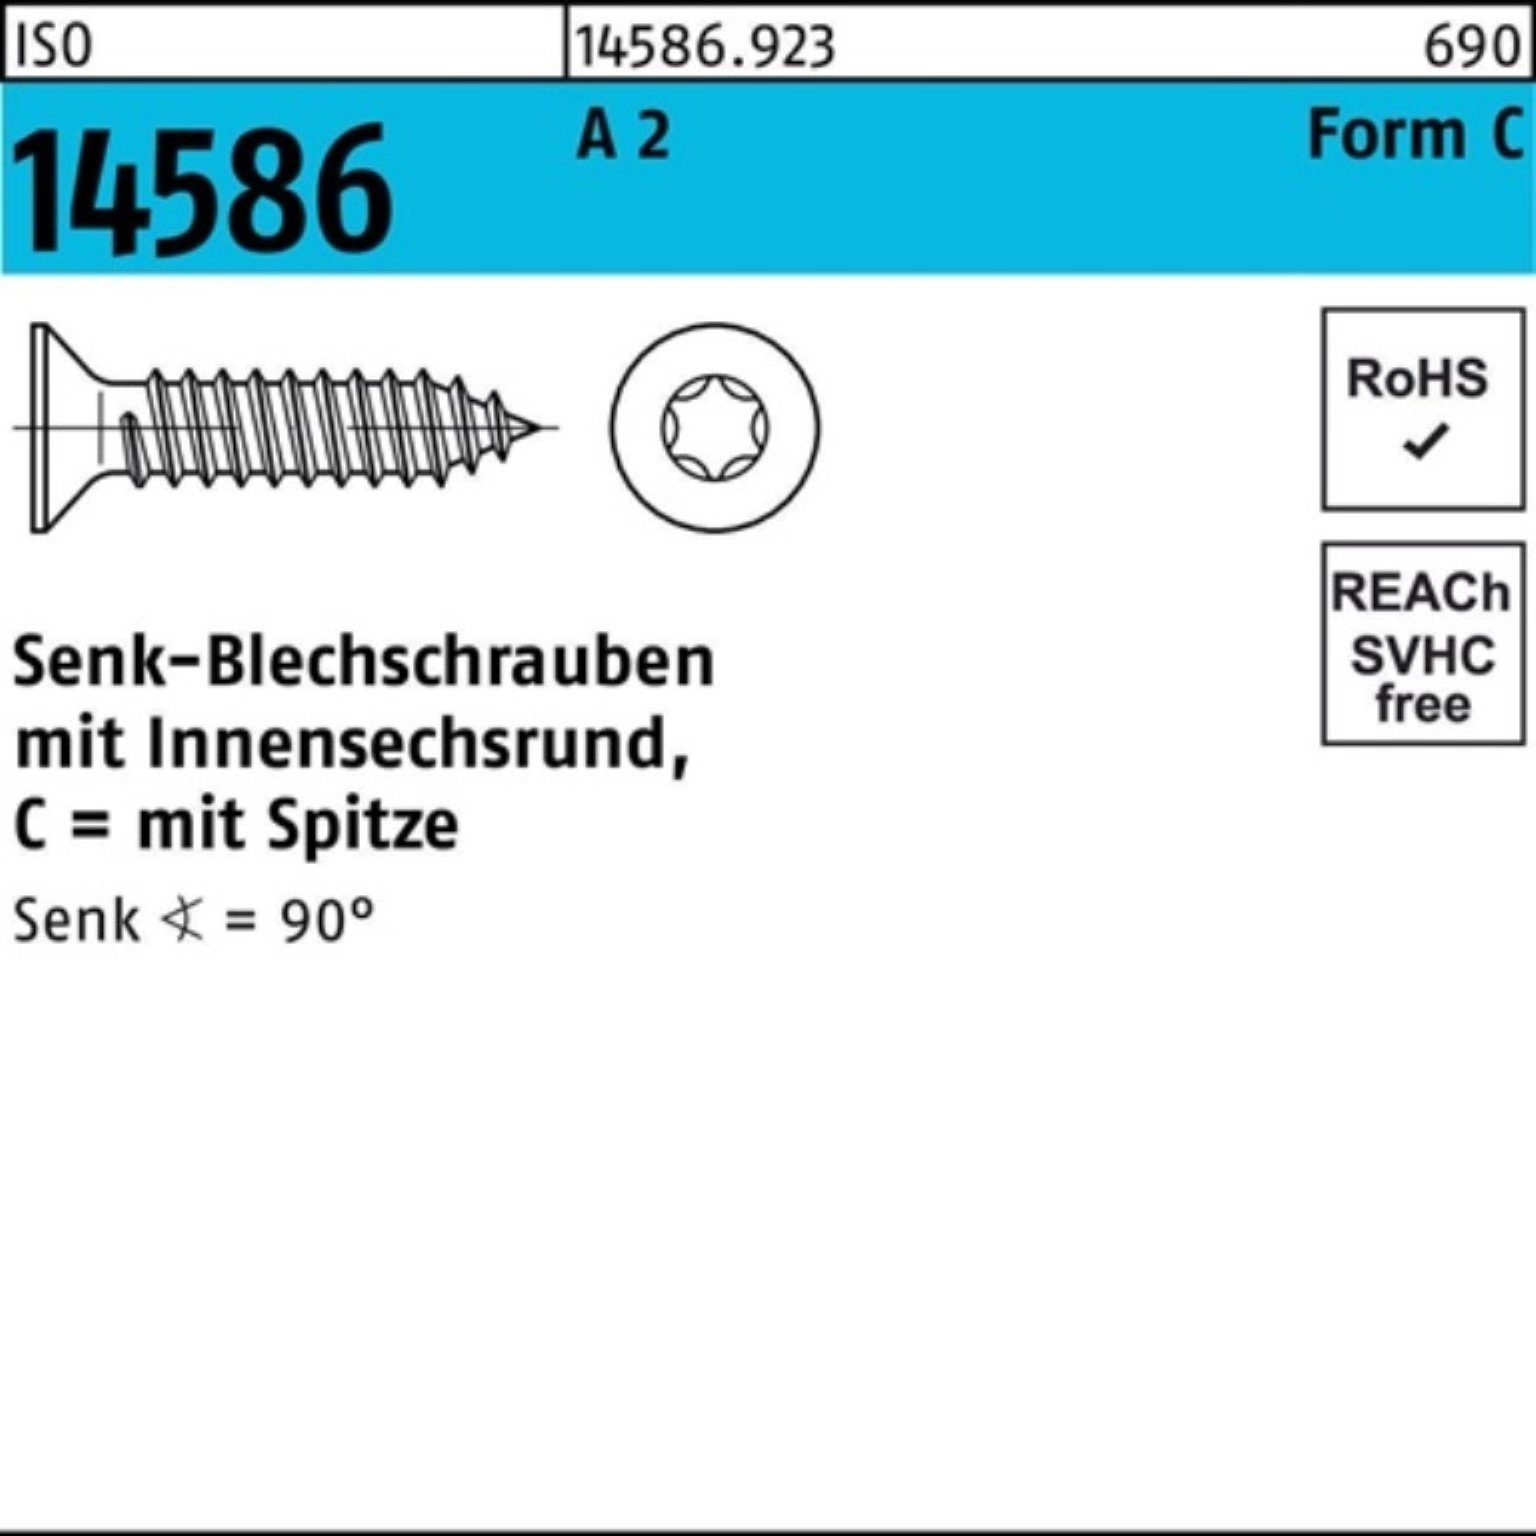 Schraube -C T30 60 ISR/Spitze 2 2 Senkblechschraube Reyher 6,3x Pack 14586 A 250er ISO